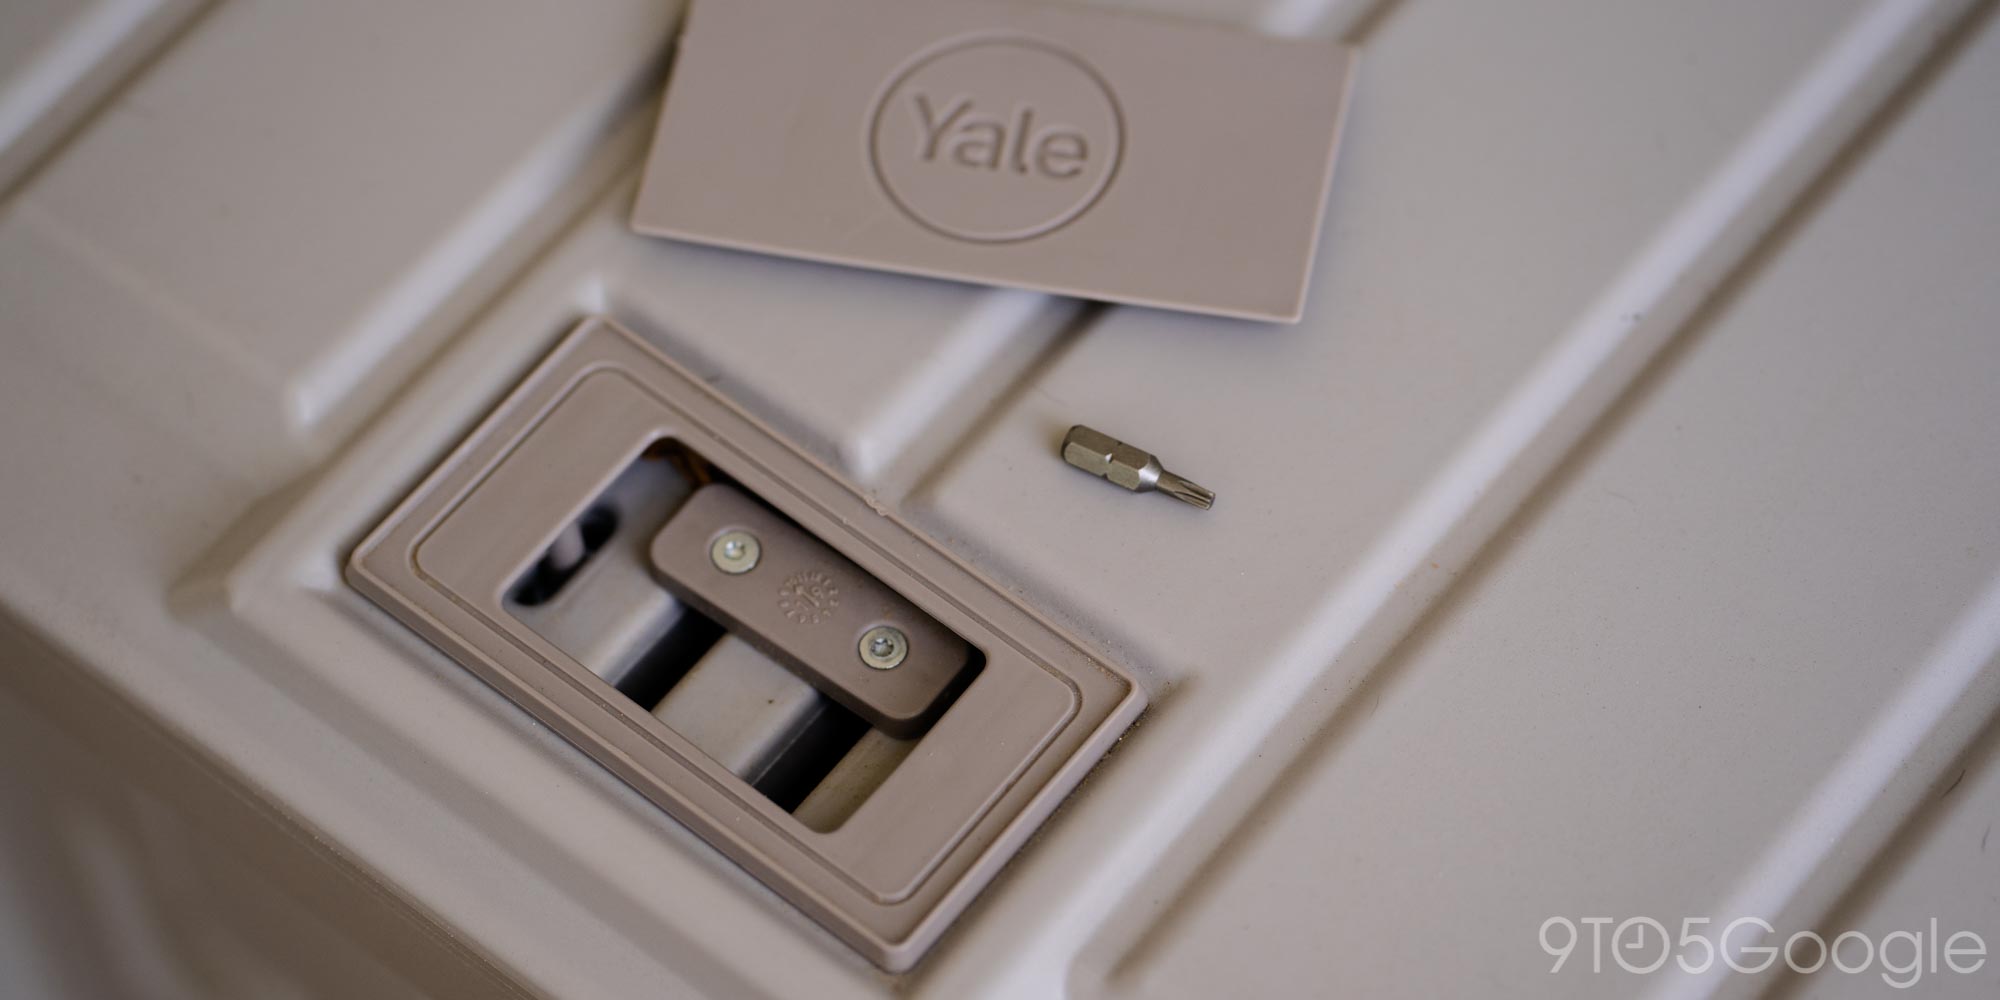 باز کردن قفل پشتیبان جعبه تحویل هوشمند Yale